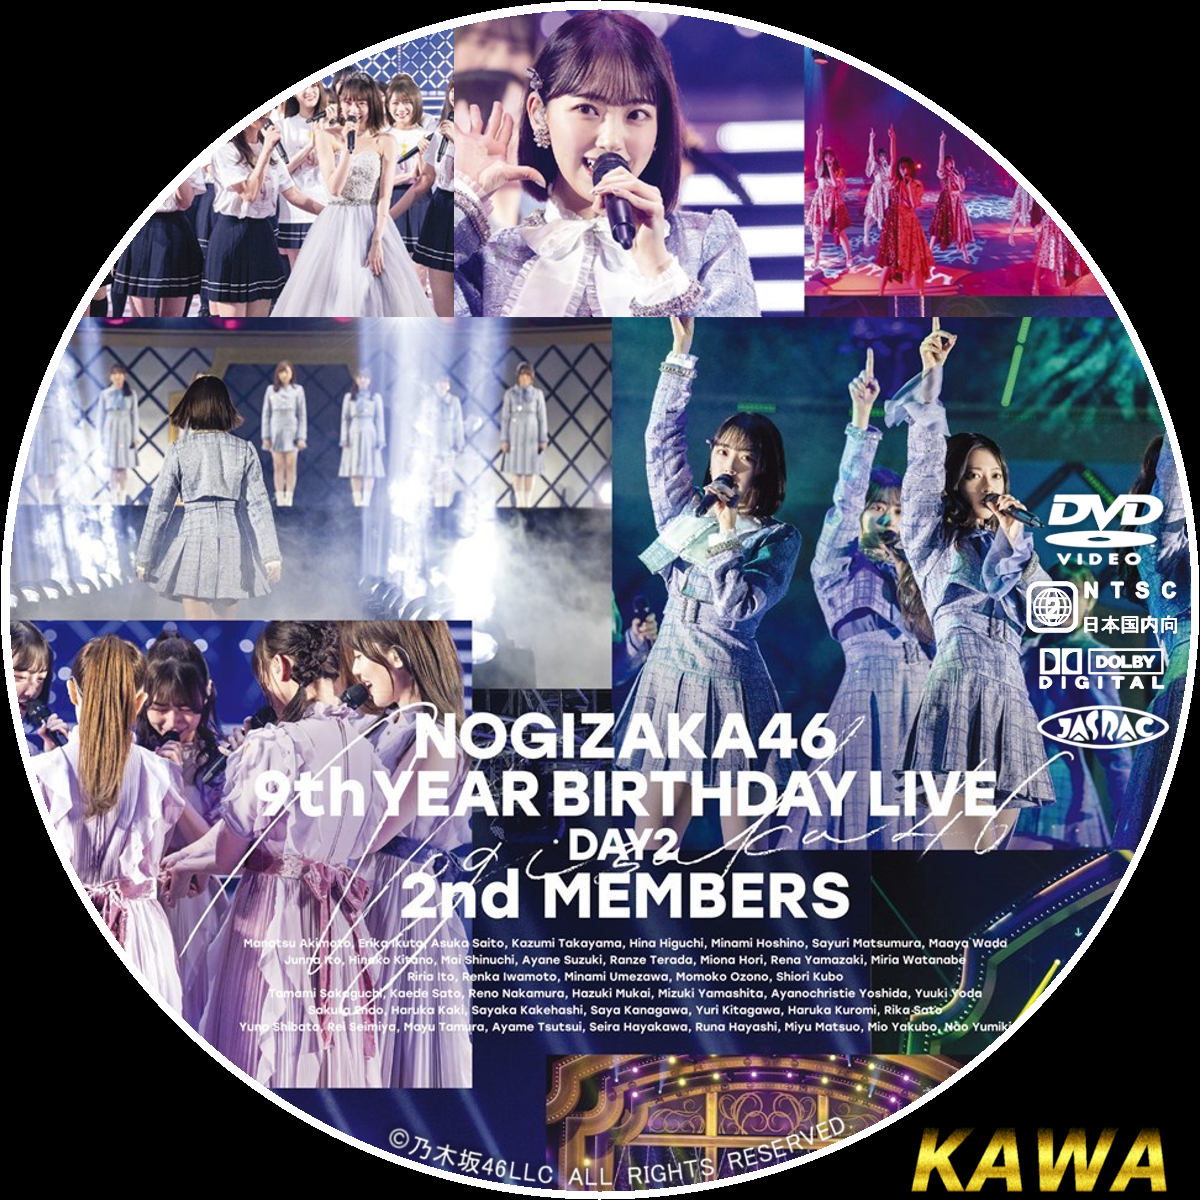 インターネットサイト 乃木坂46 9th YEAR BIRTHDAY LIVE 5days DVD - DVD